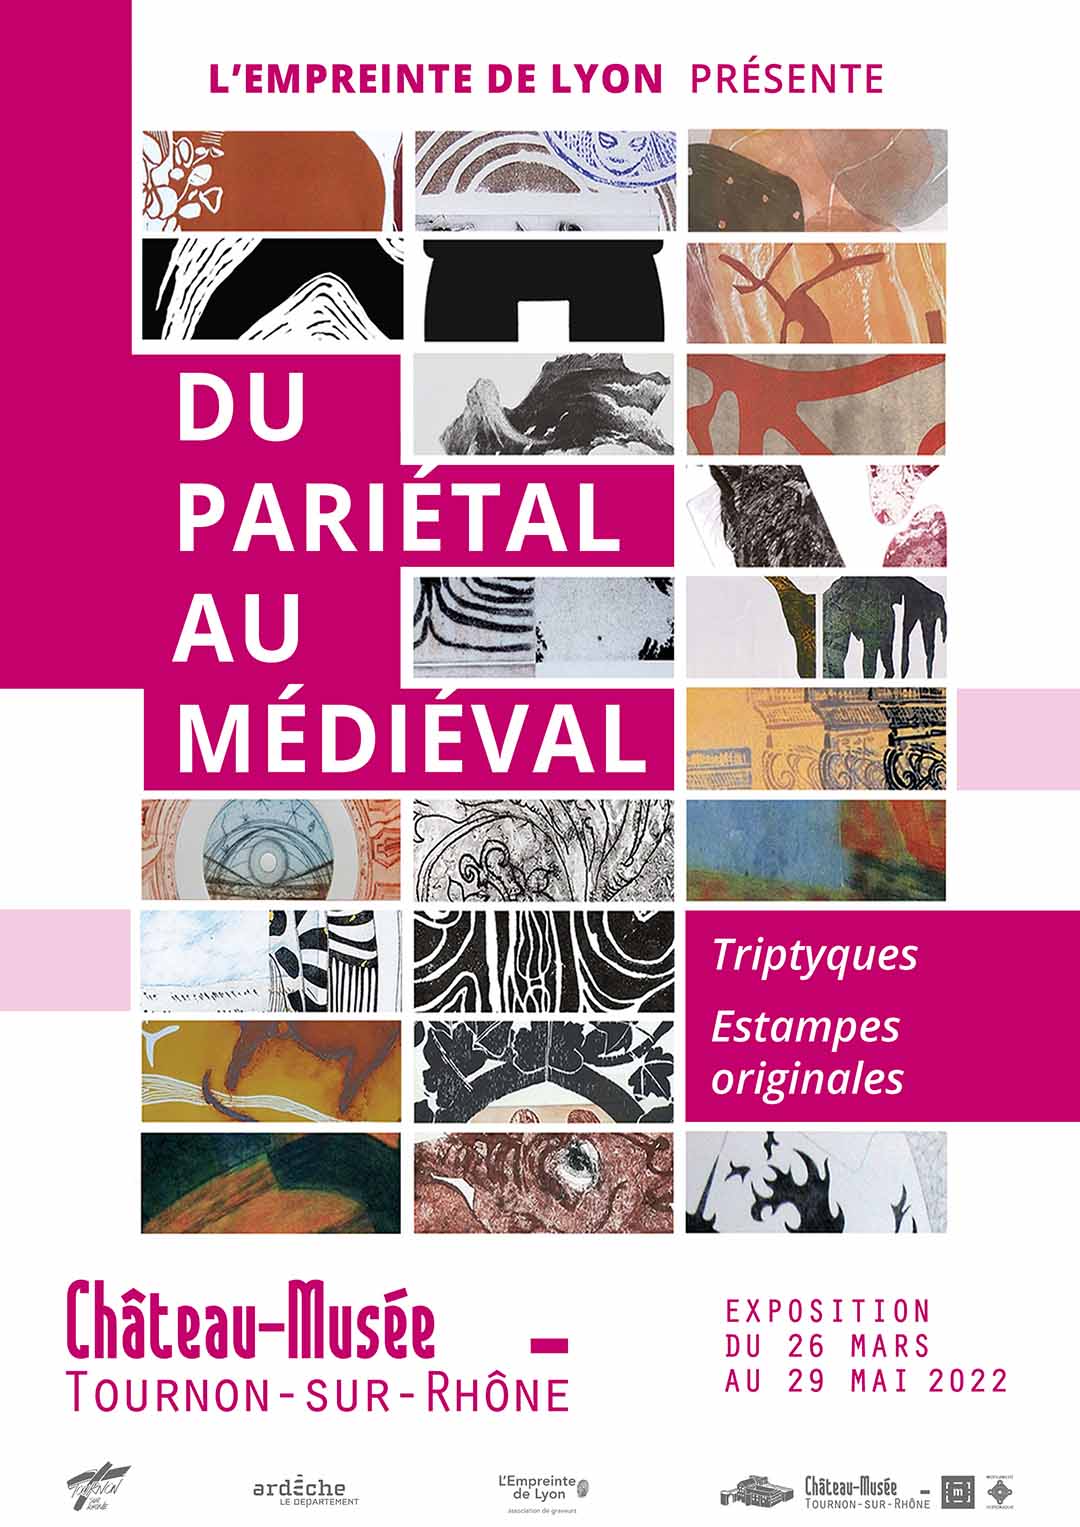 DU PARIÉTAL AU MÉDIÉVAL. Expositon du 26 mars au 29 mai 2022 au Château-Musée.